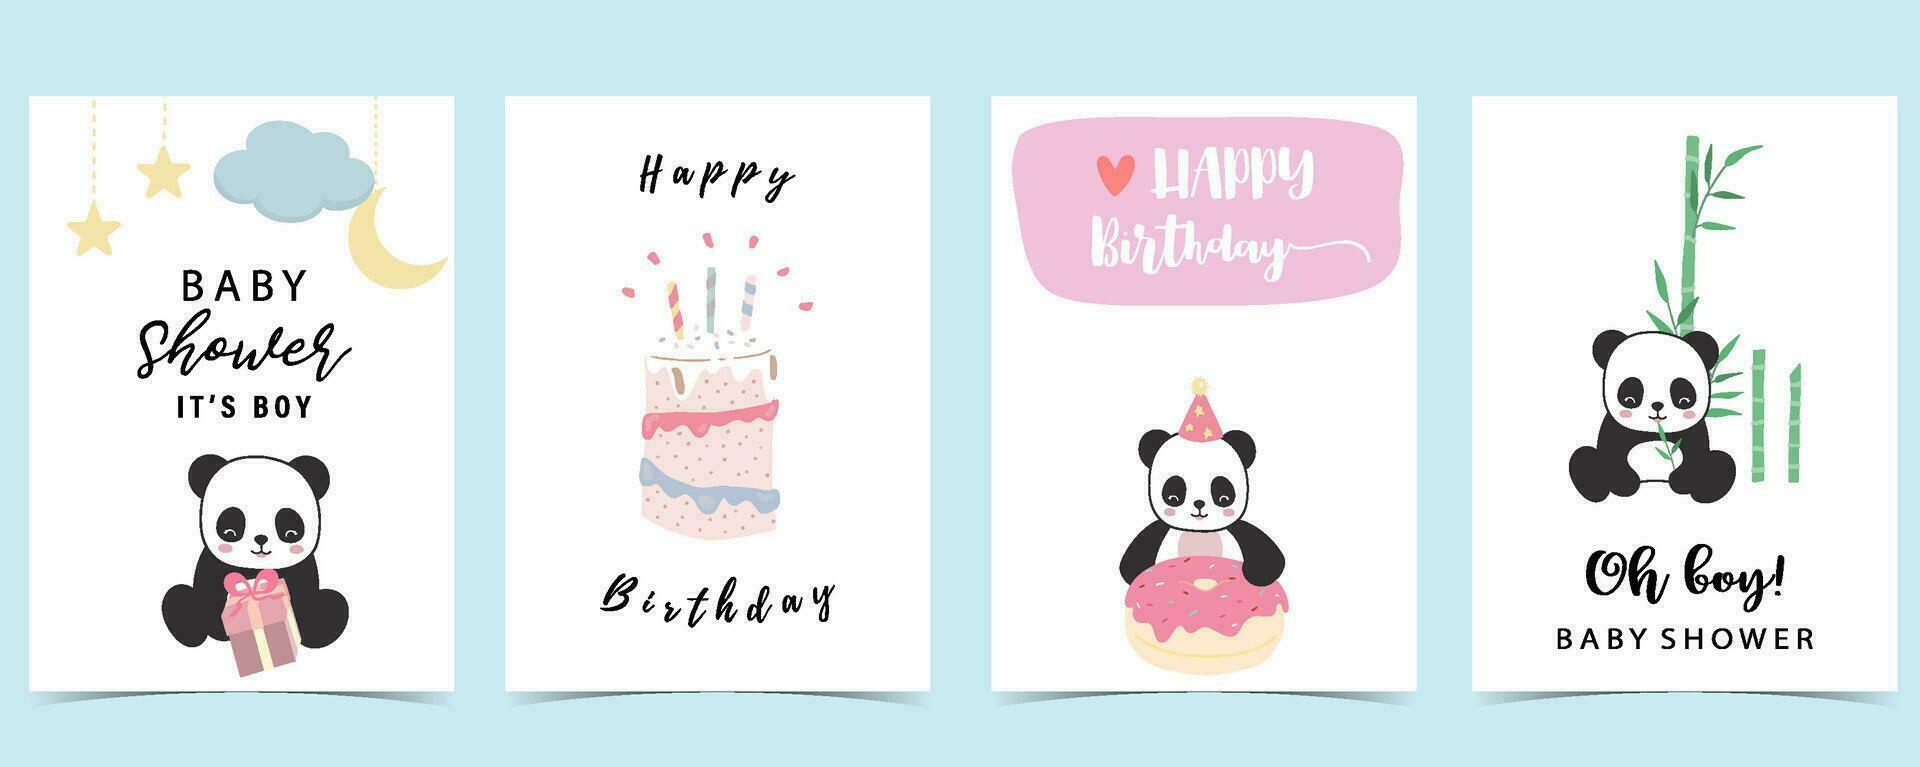 bebé ducha invitación tarjeta para chico con panda, pastel, bambú, cielo vector